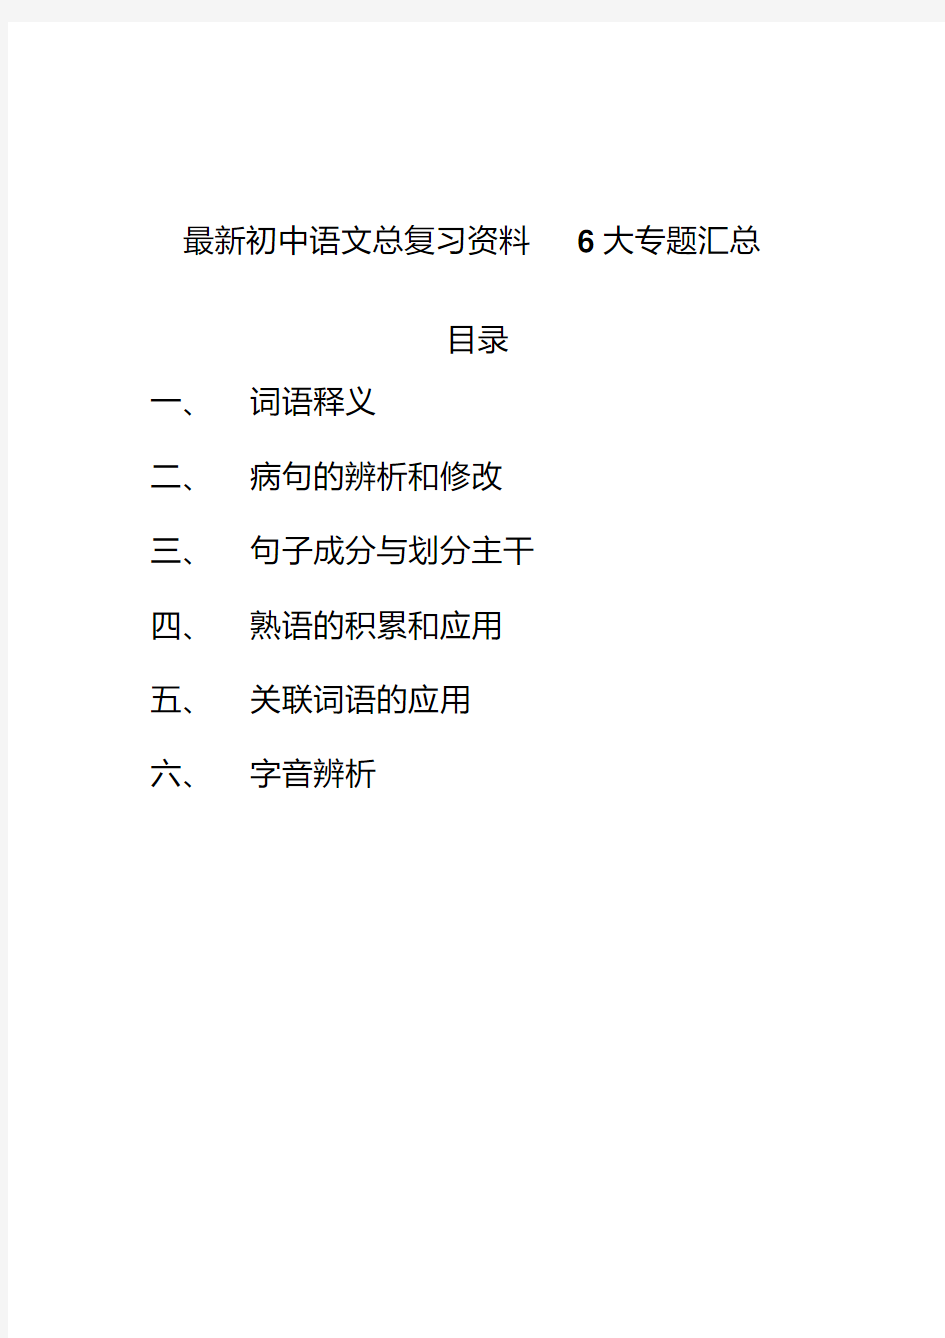 最新初中语文总复习资料6大专题汇总